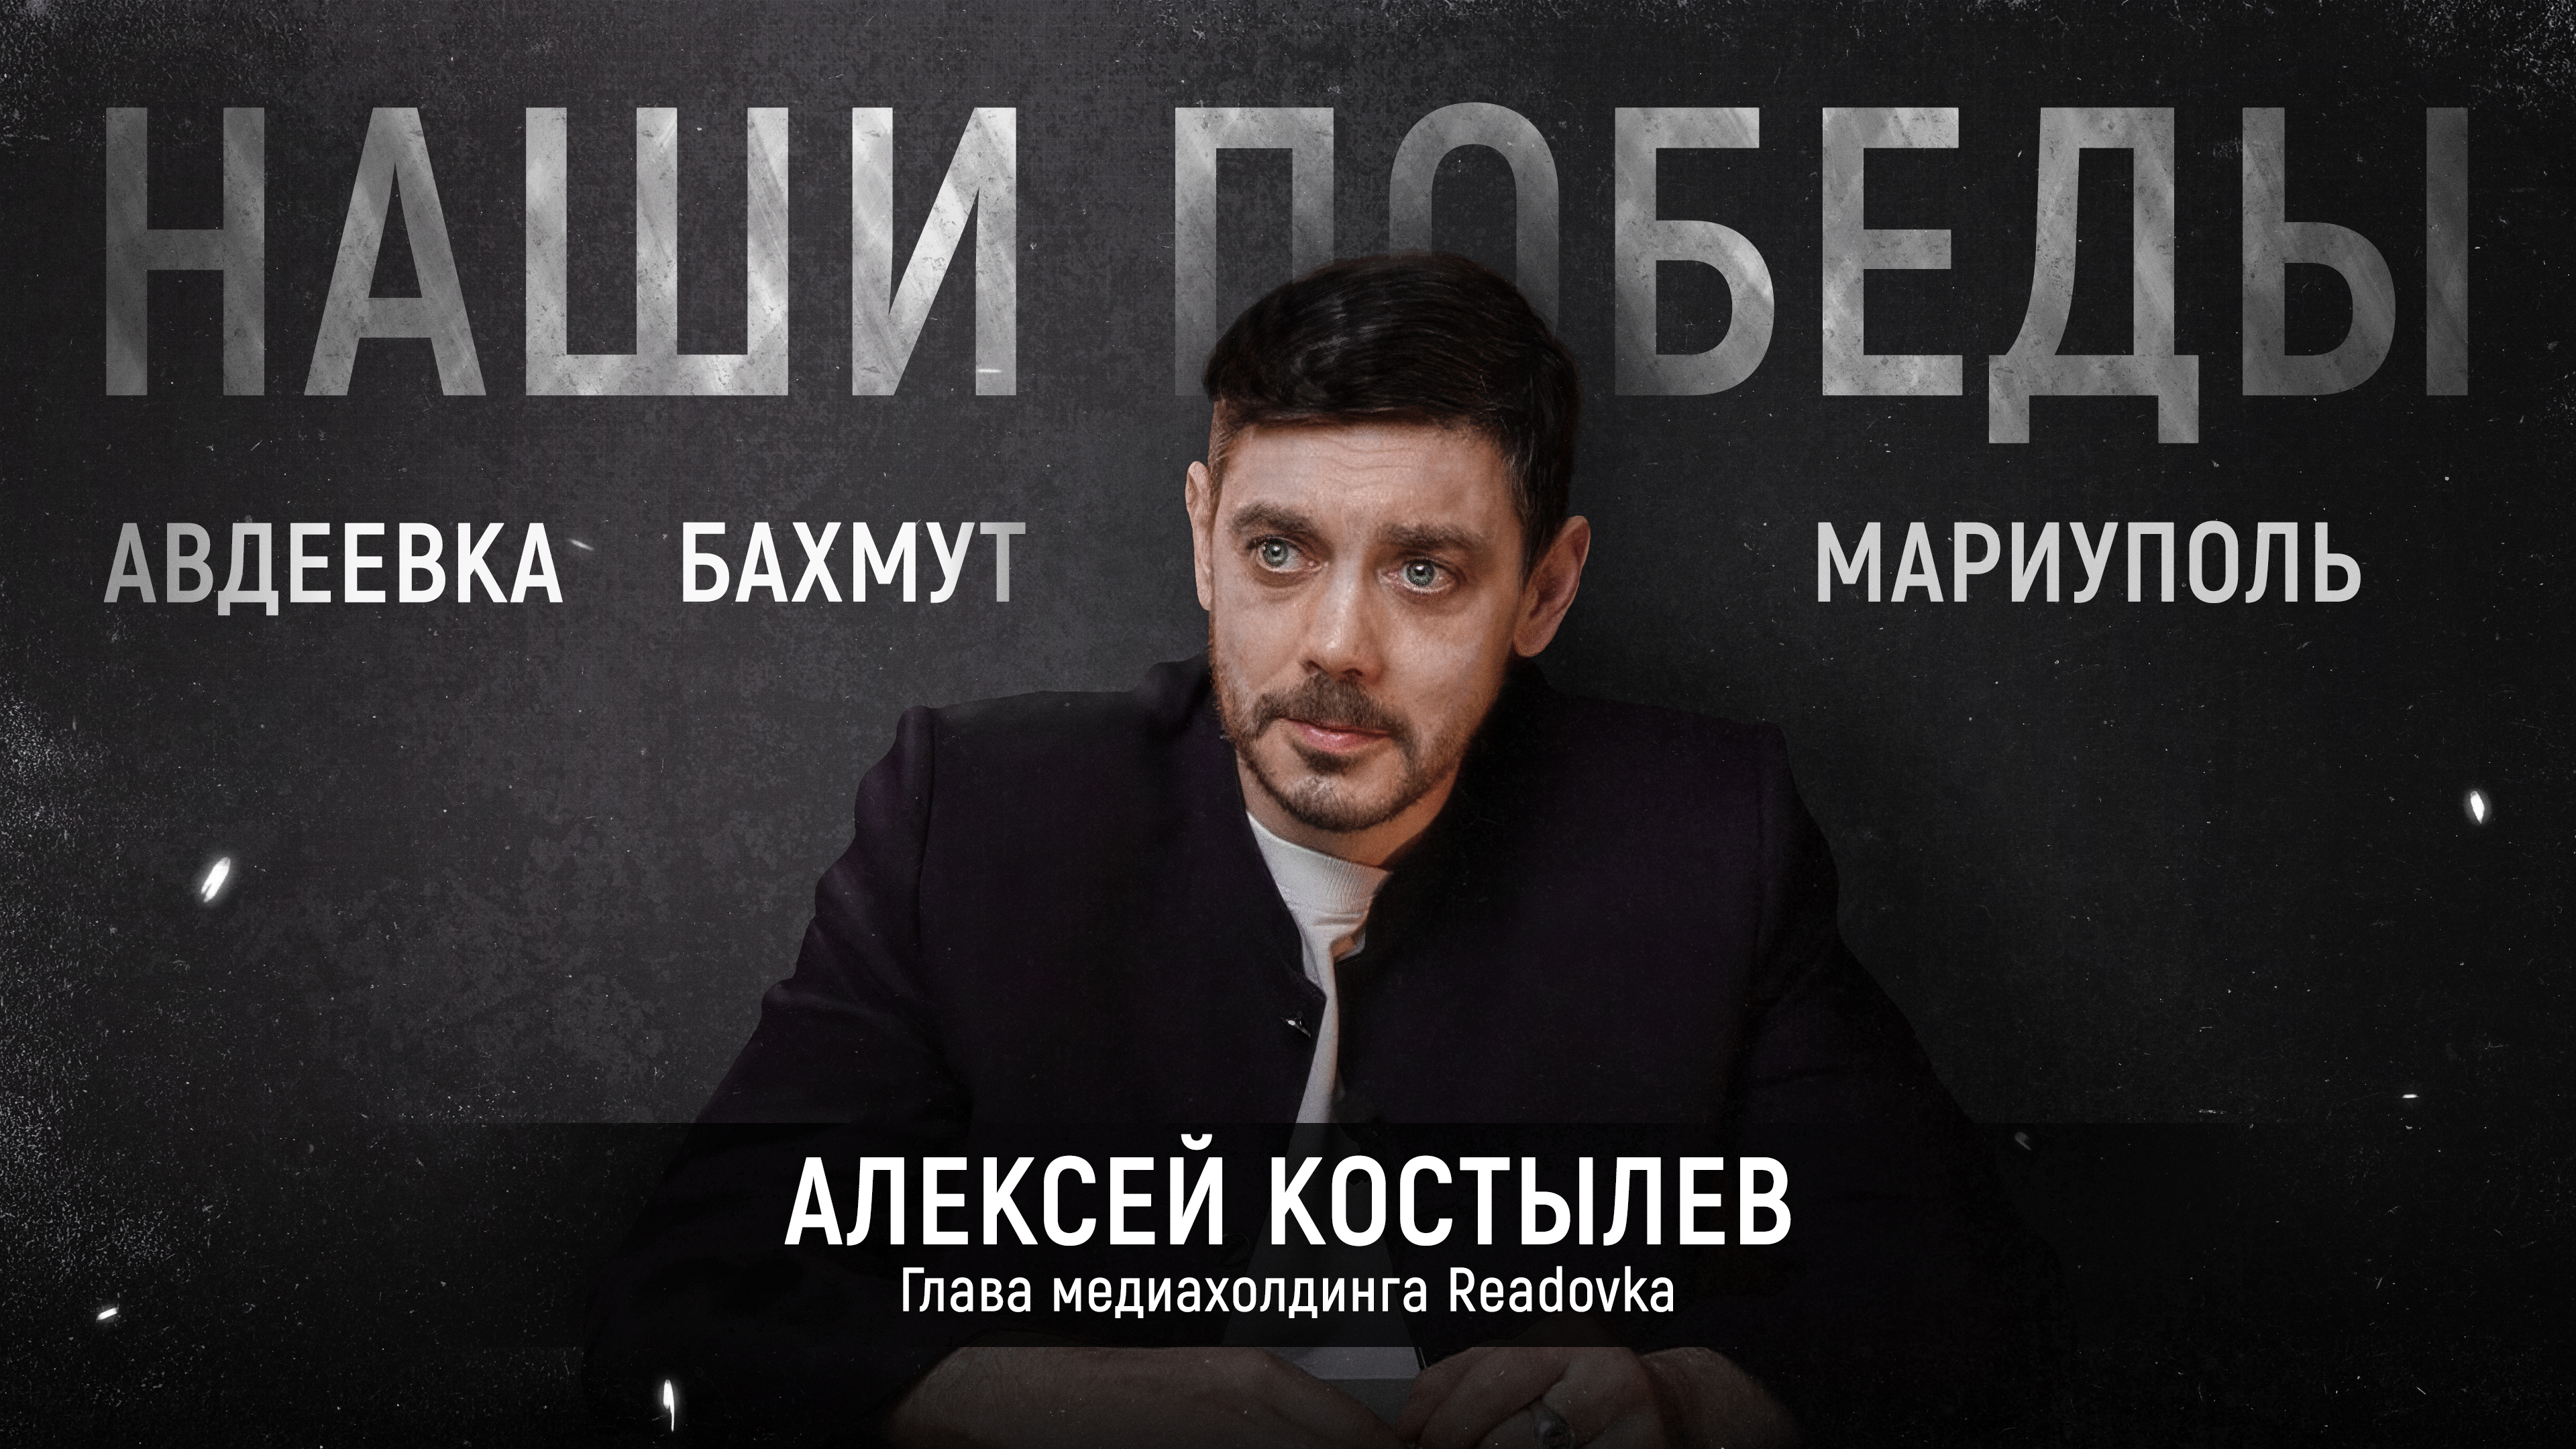 Обращение главы медиахолдинга Readovka Алексея Костылева по случаю второй годовщины СВО